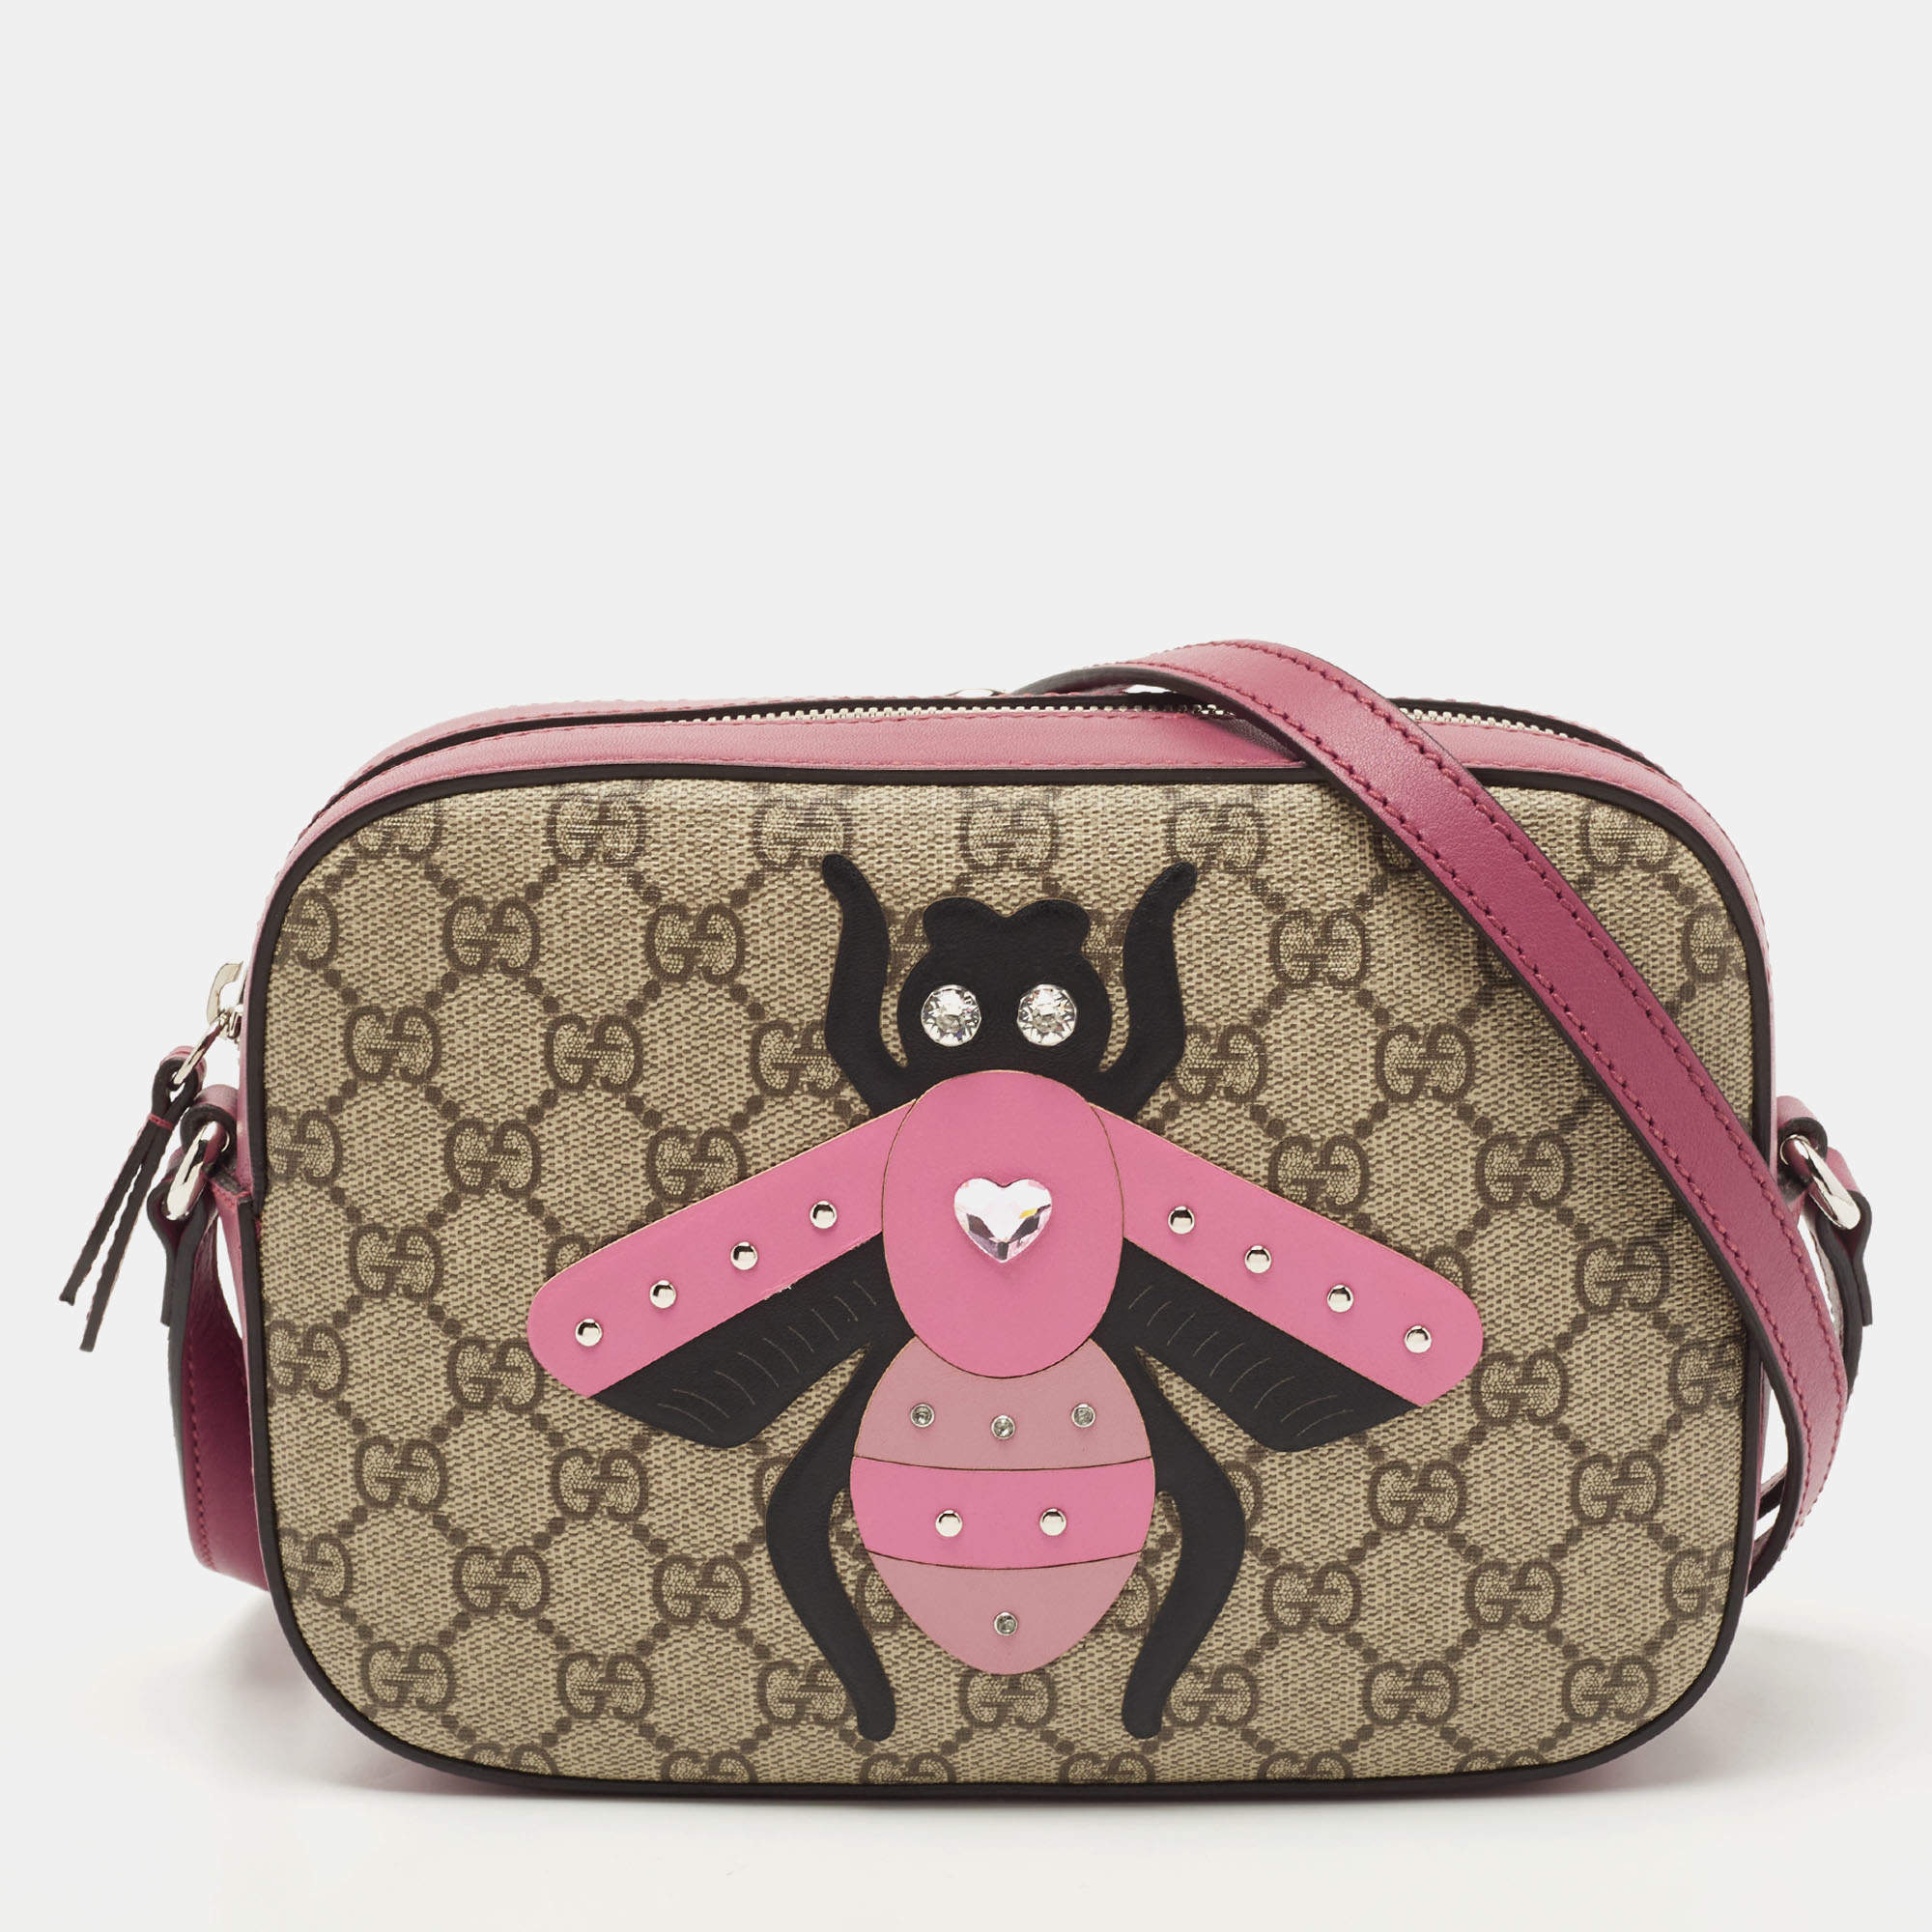 Gg marmont flap velvet crossbody bag Gucci Pink in Velvet - 40638586